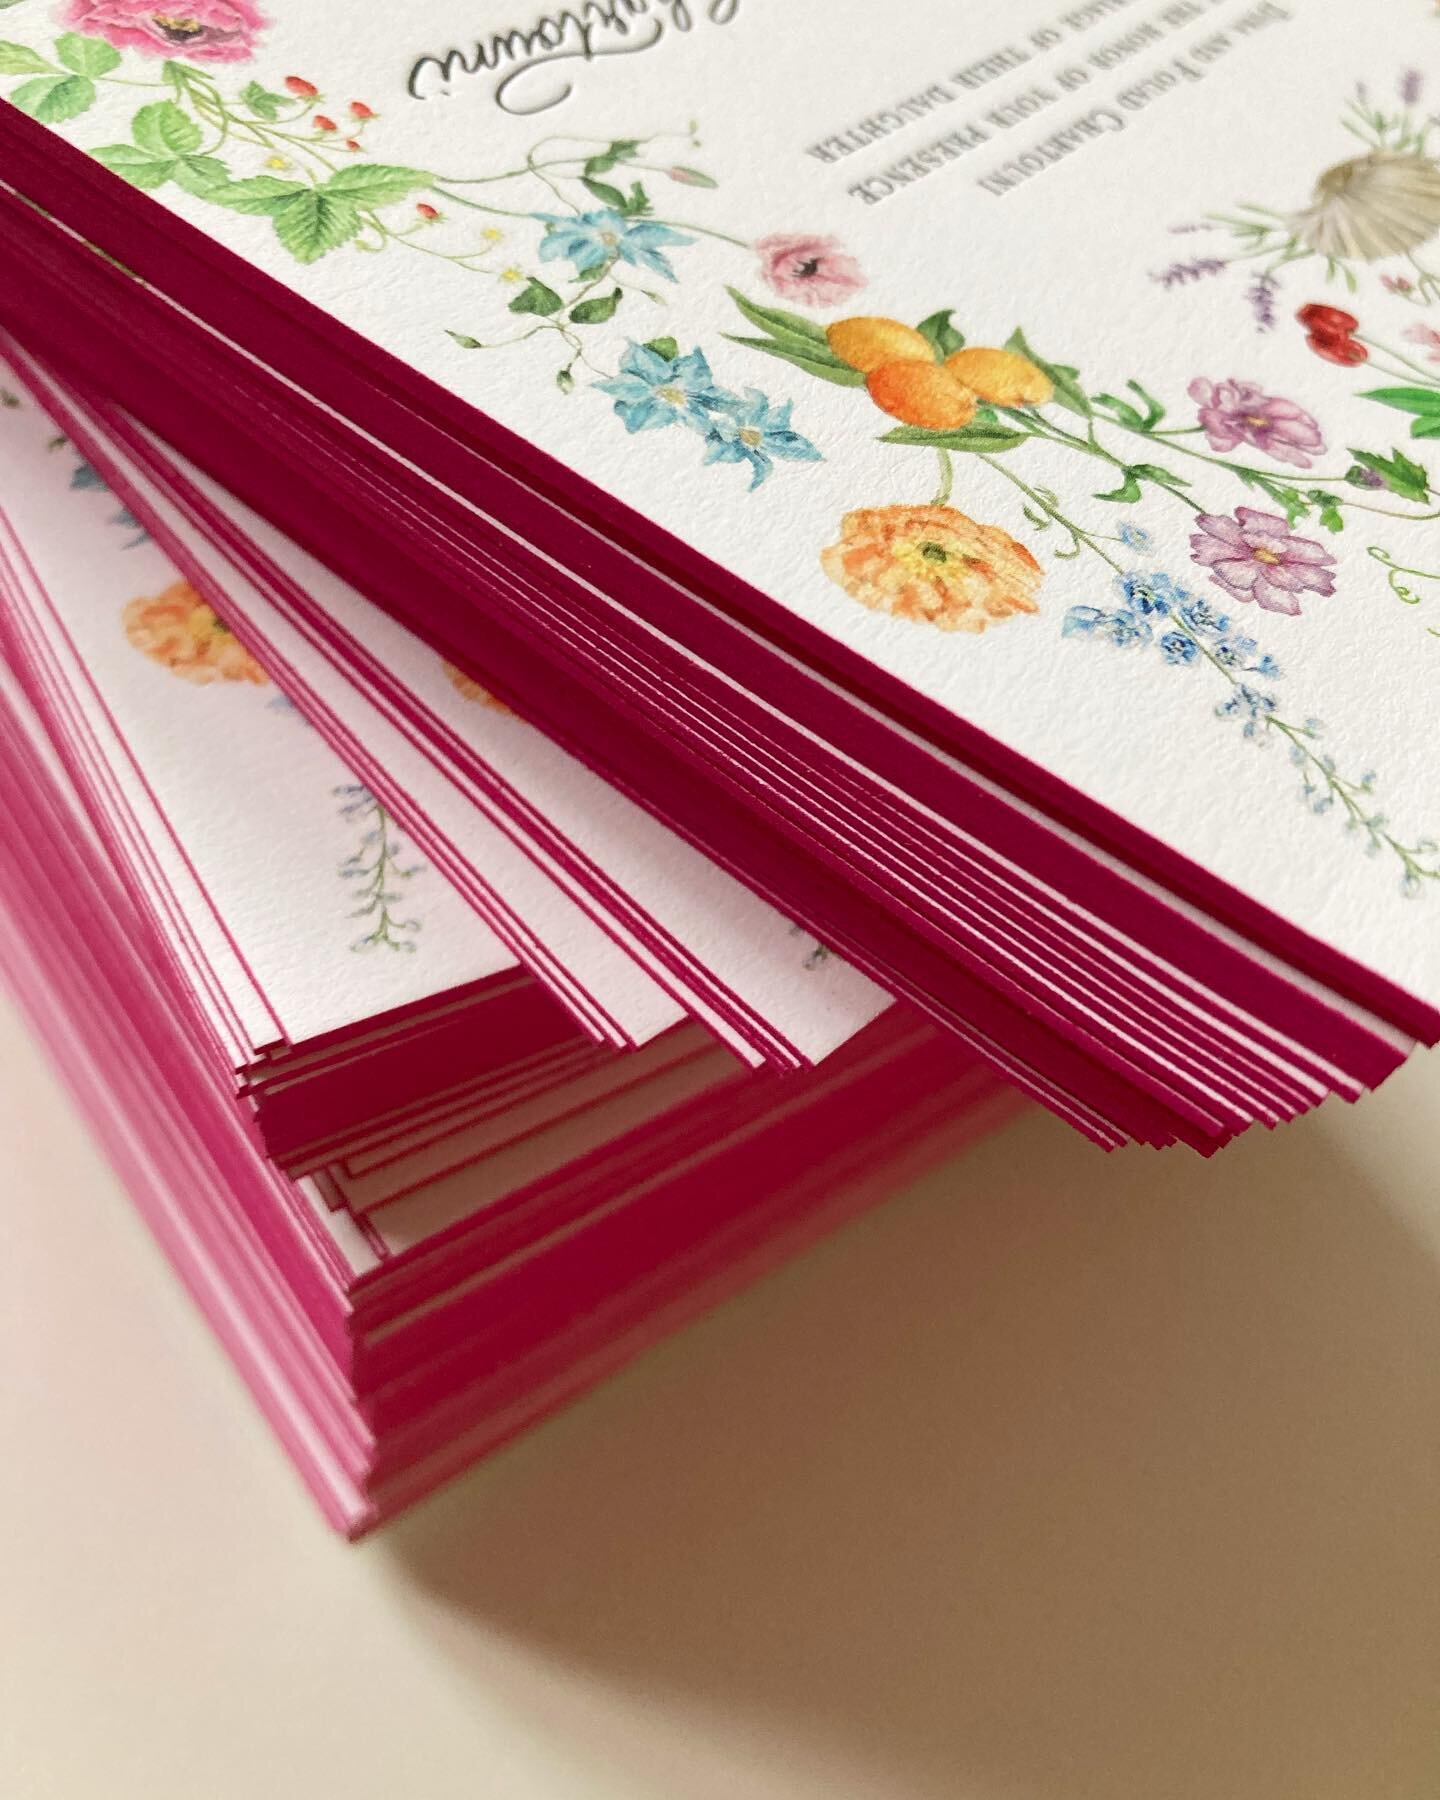 Hot pink edge painting 😍 

#edgepainting #letterpress #weddinginvitations #invitation #watercolorinvitation #floralinvitation #custominvitations